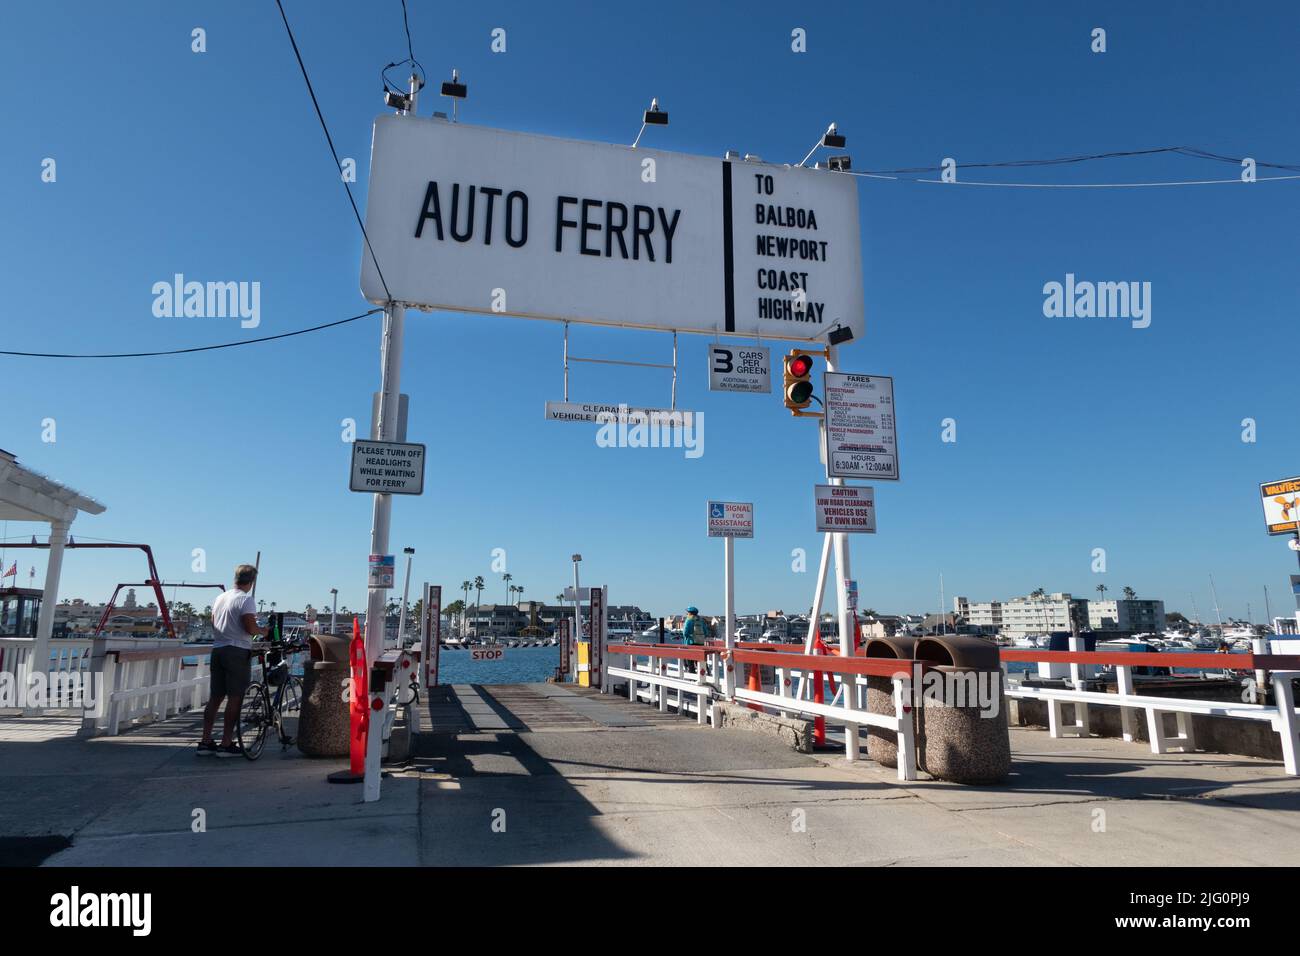 Ancienne entrée en ferry pour petites voitures sur Balboa Island Newport Beach Sud de la californie des États-Unis Banque D'Images